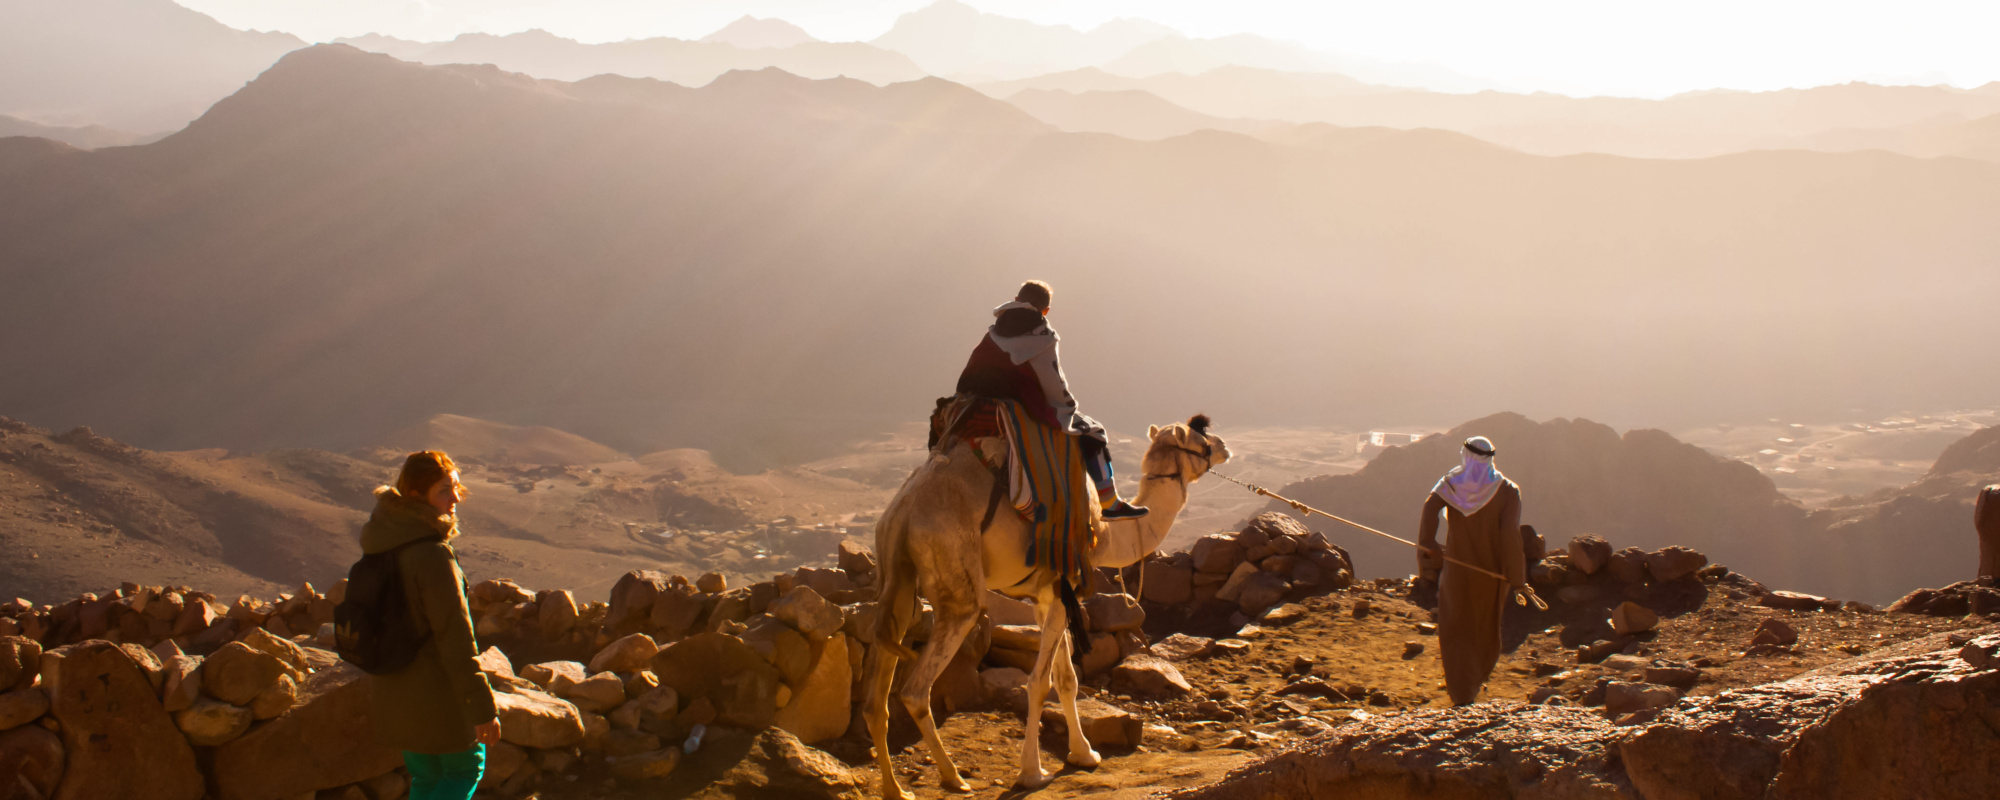 Ägypten - Kamel mit Reiter, Kamelführer, Frau laufend auf Mosesberg, im Hintergrund Berge und Tal